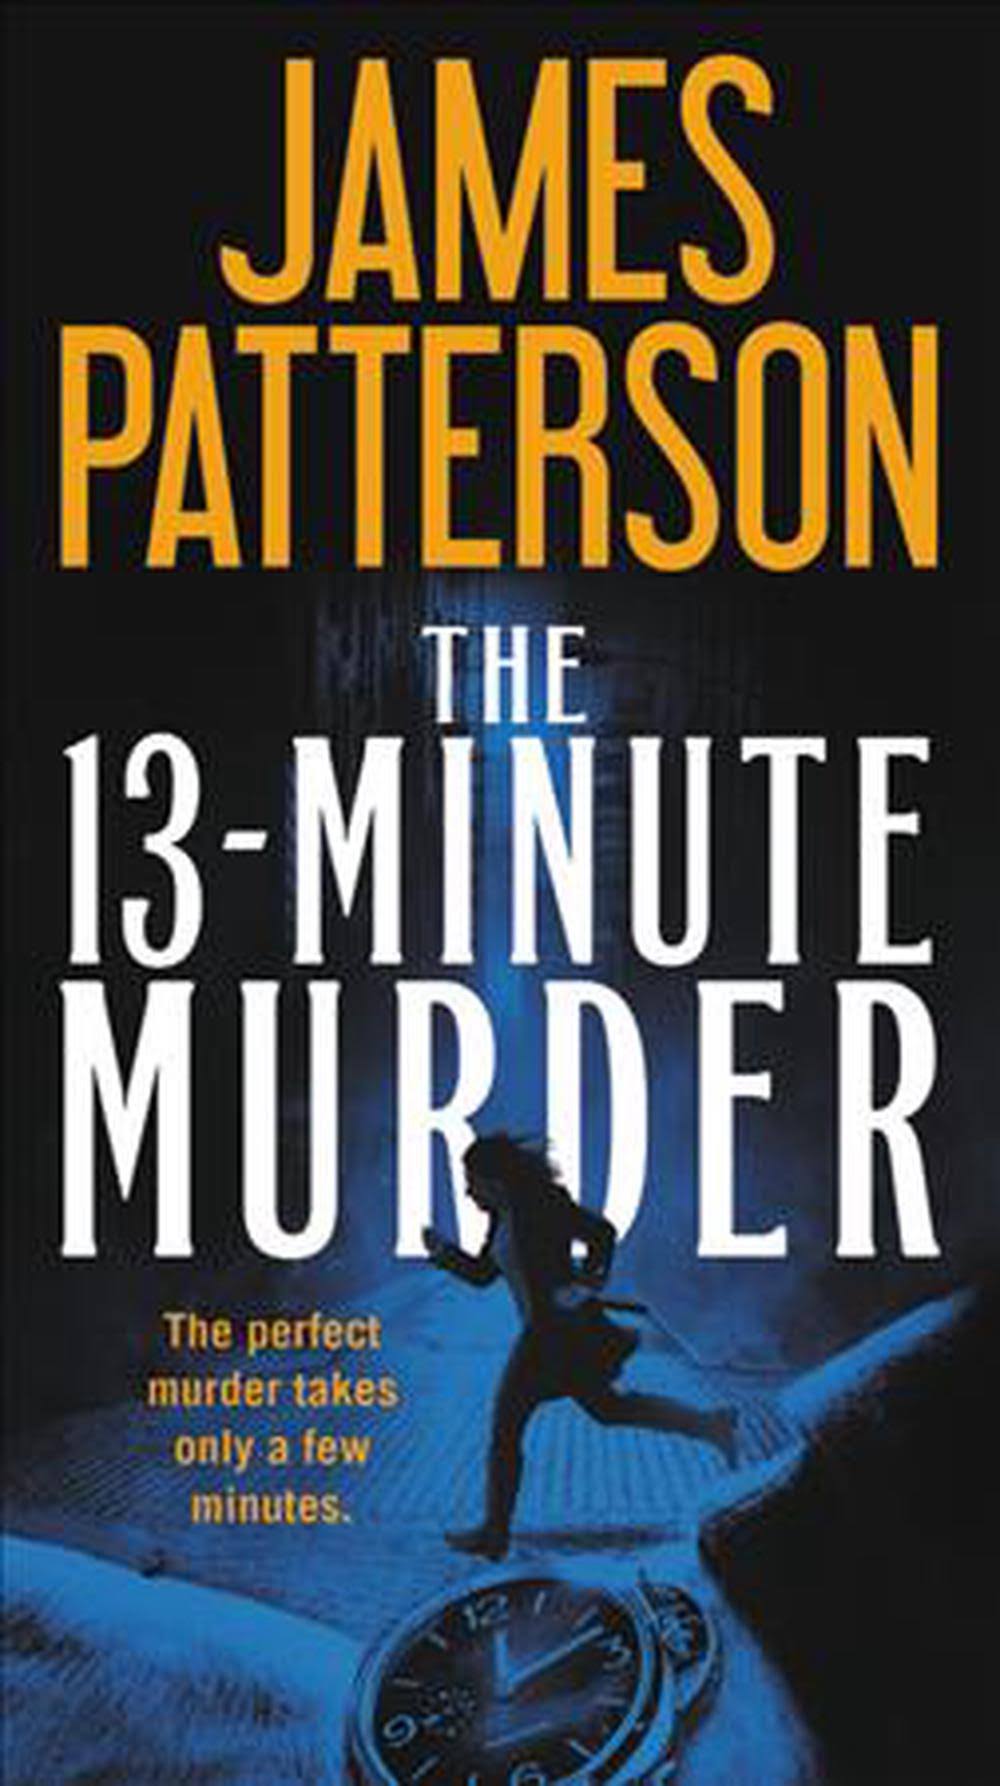 The 13-Minute Murder [Book]